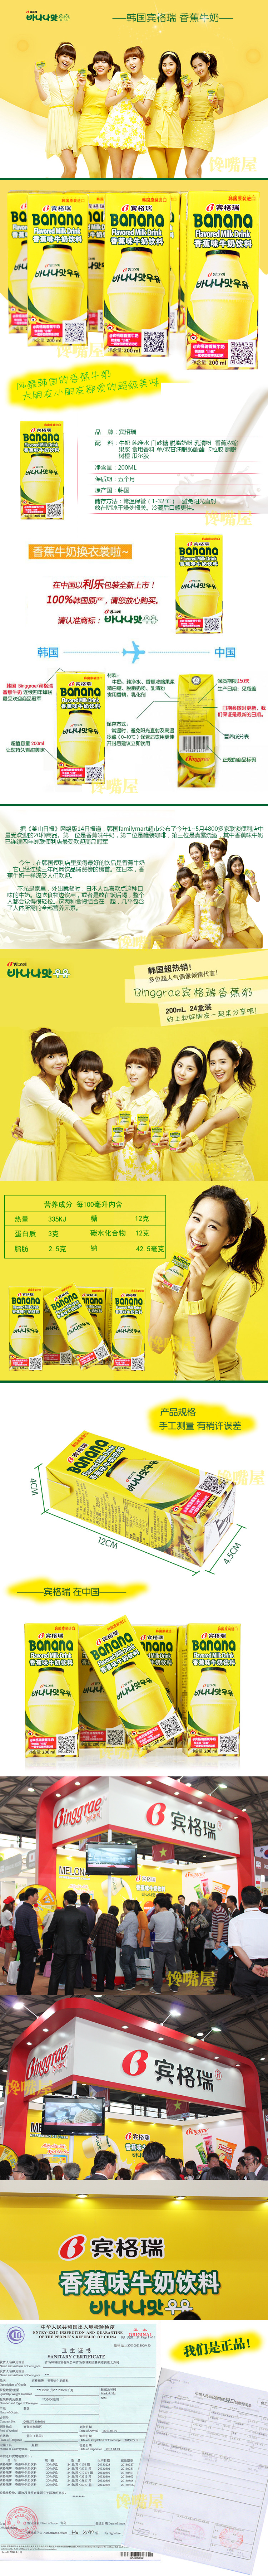 淘宝美工浩南韩国进口宾格瑞香蕉牛奶描述作品